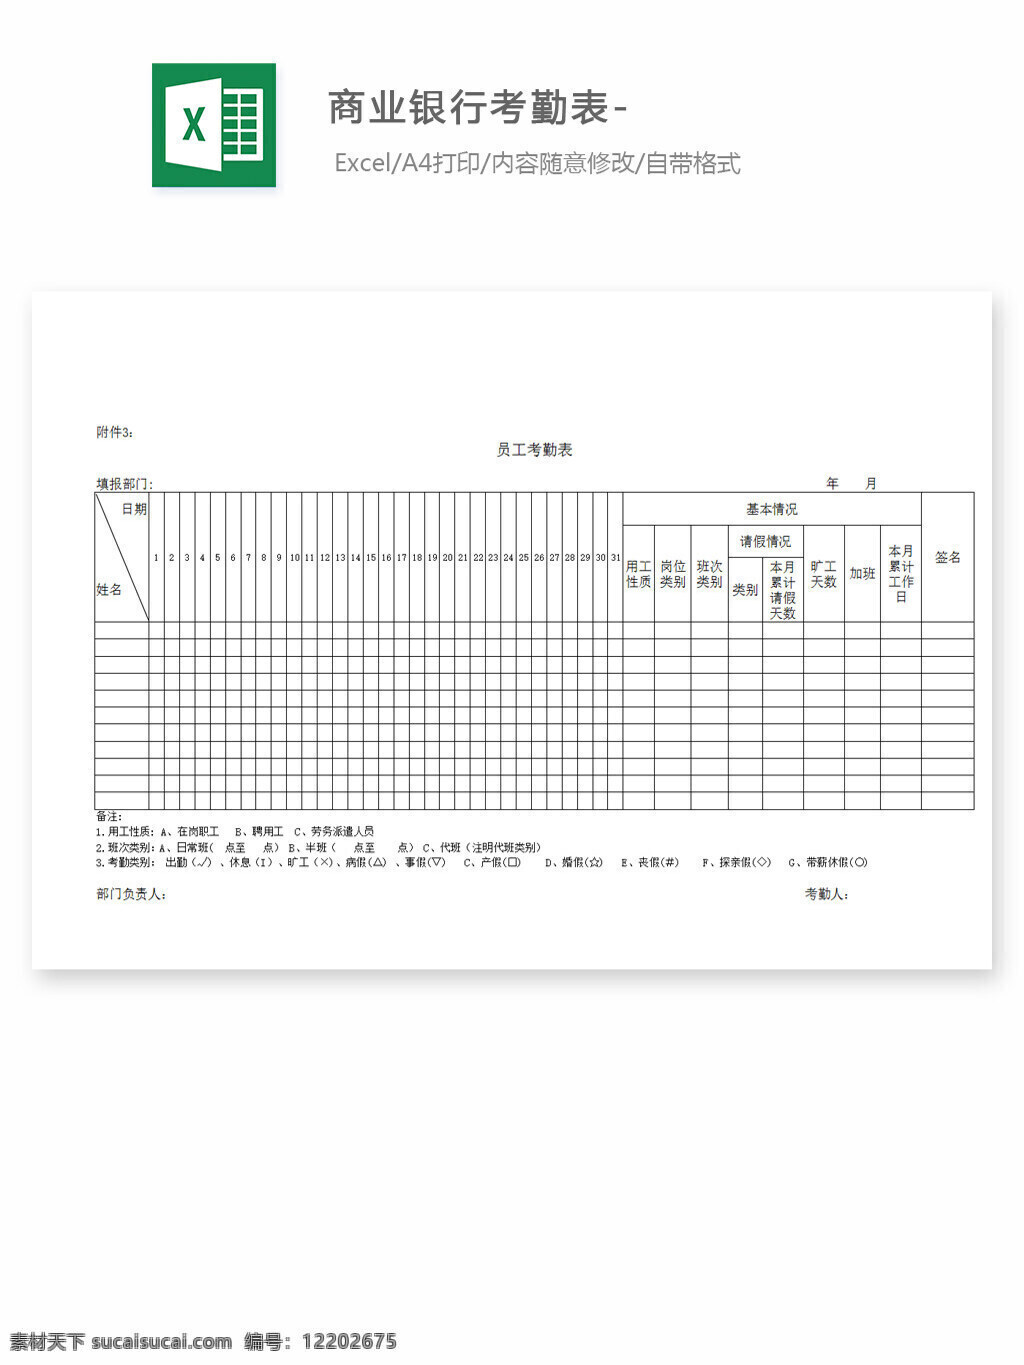 商业银行 考勤 表 excel 表格 表格模板 表格设计 图表